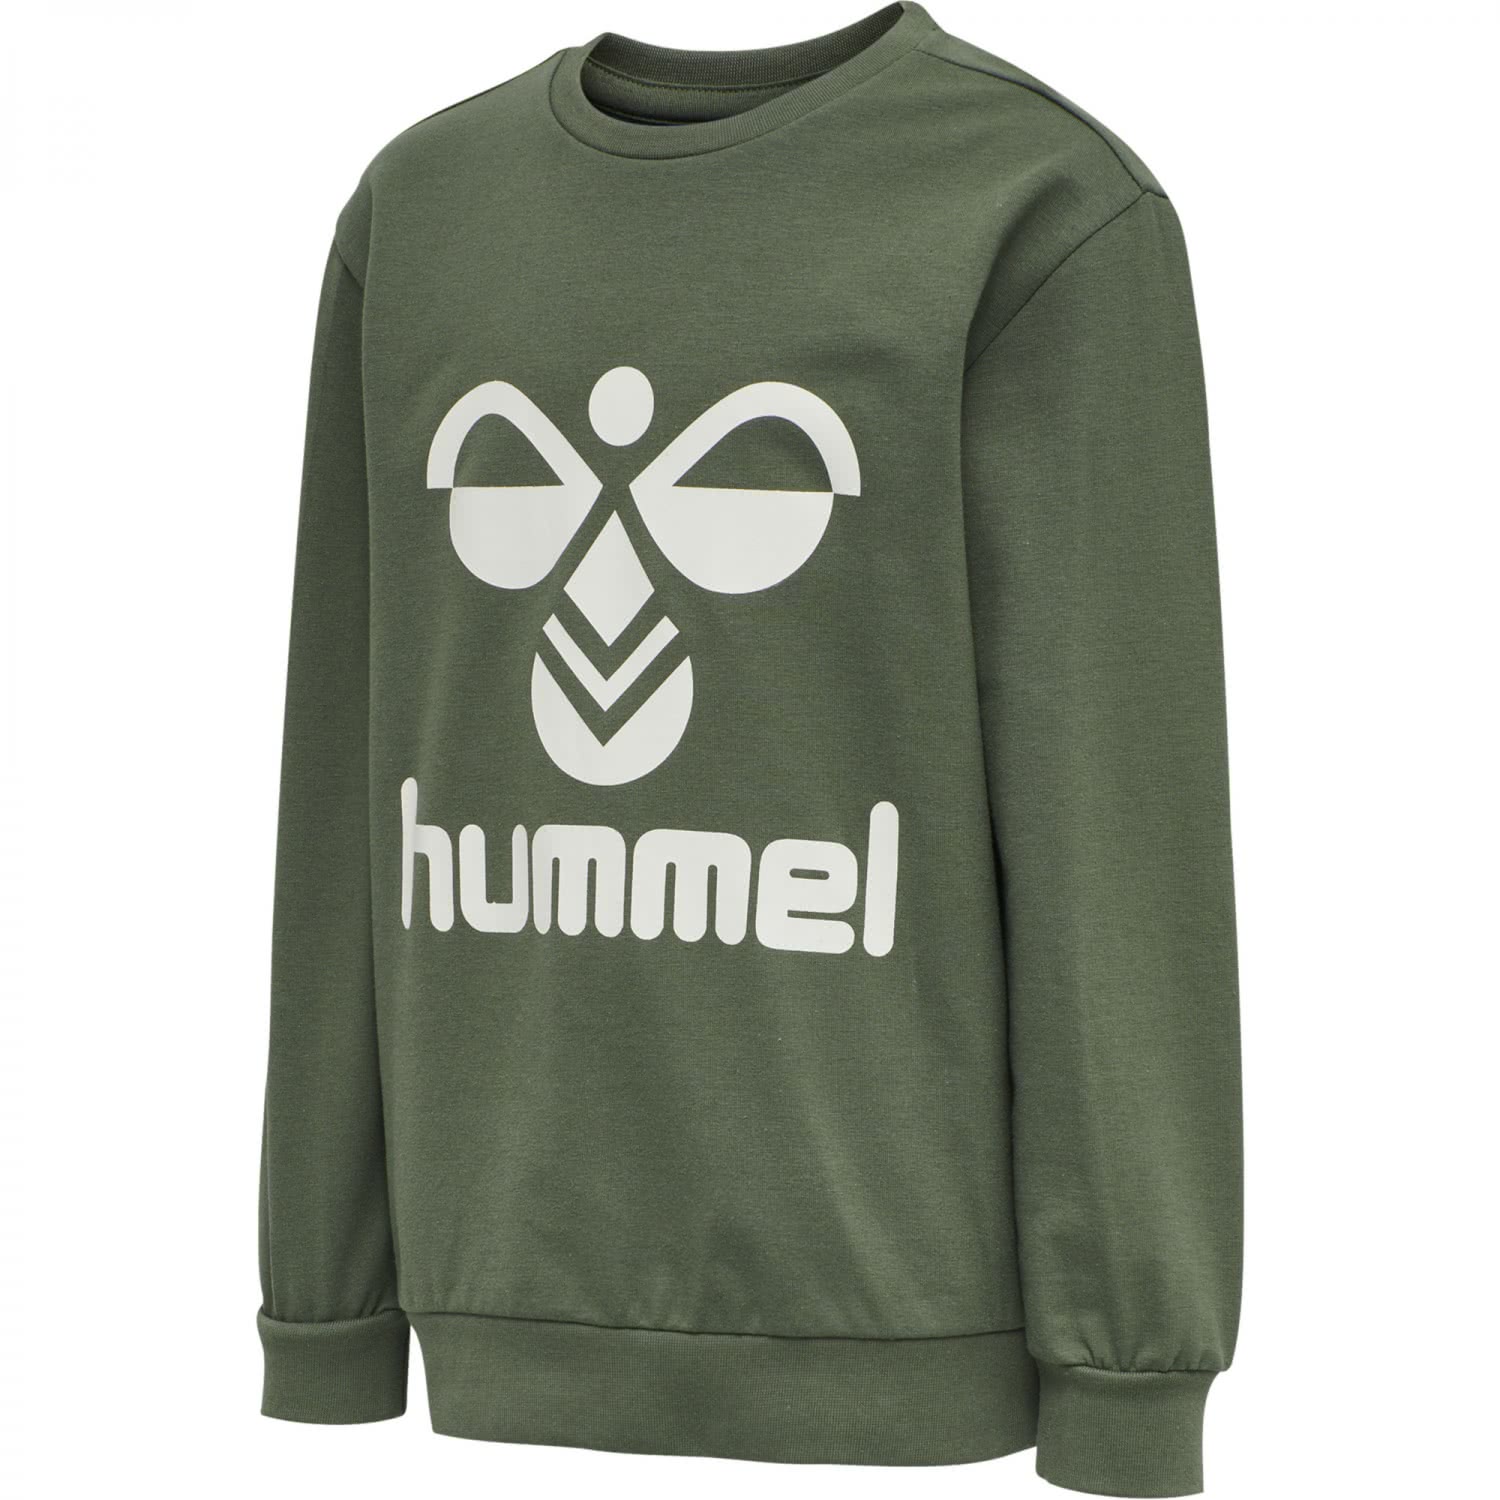 Kinder 203659 eBay Dos Hummel | Sweatshirt